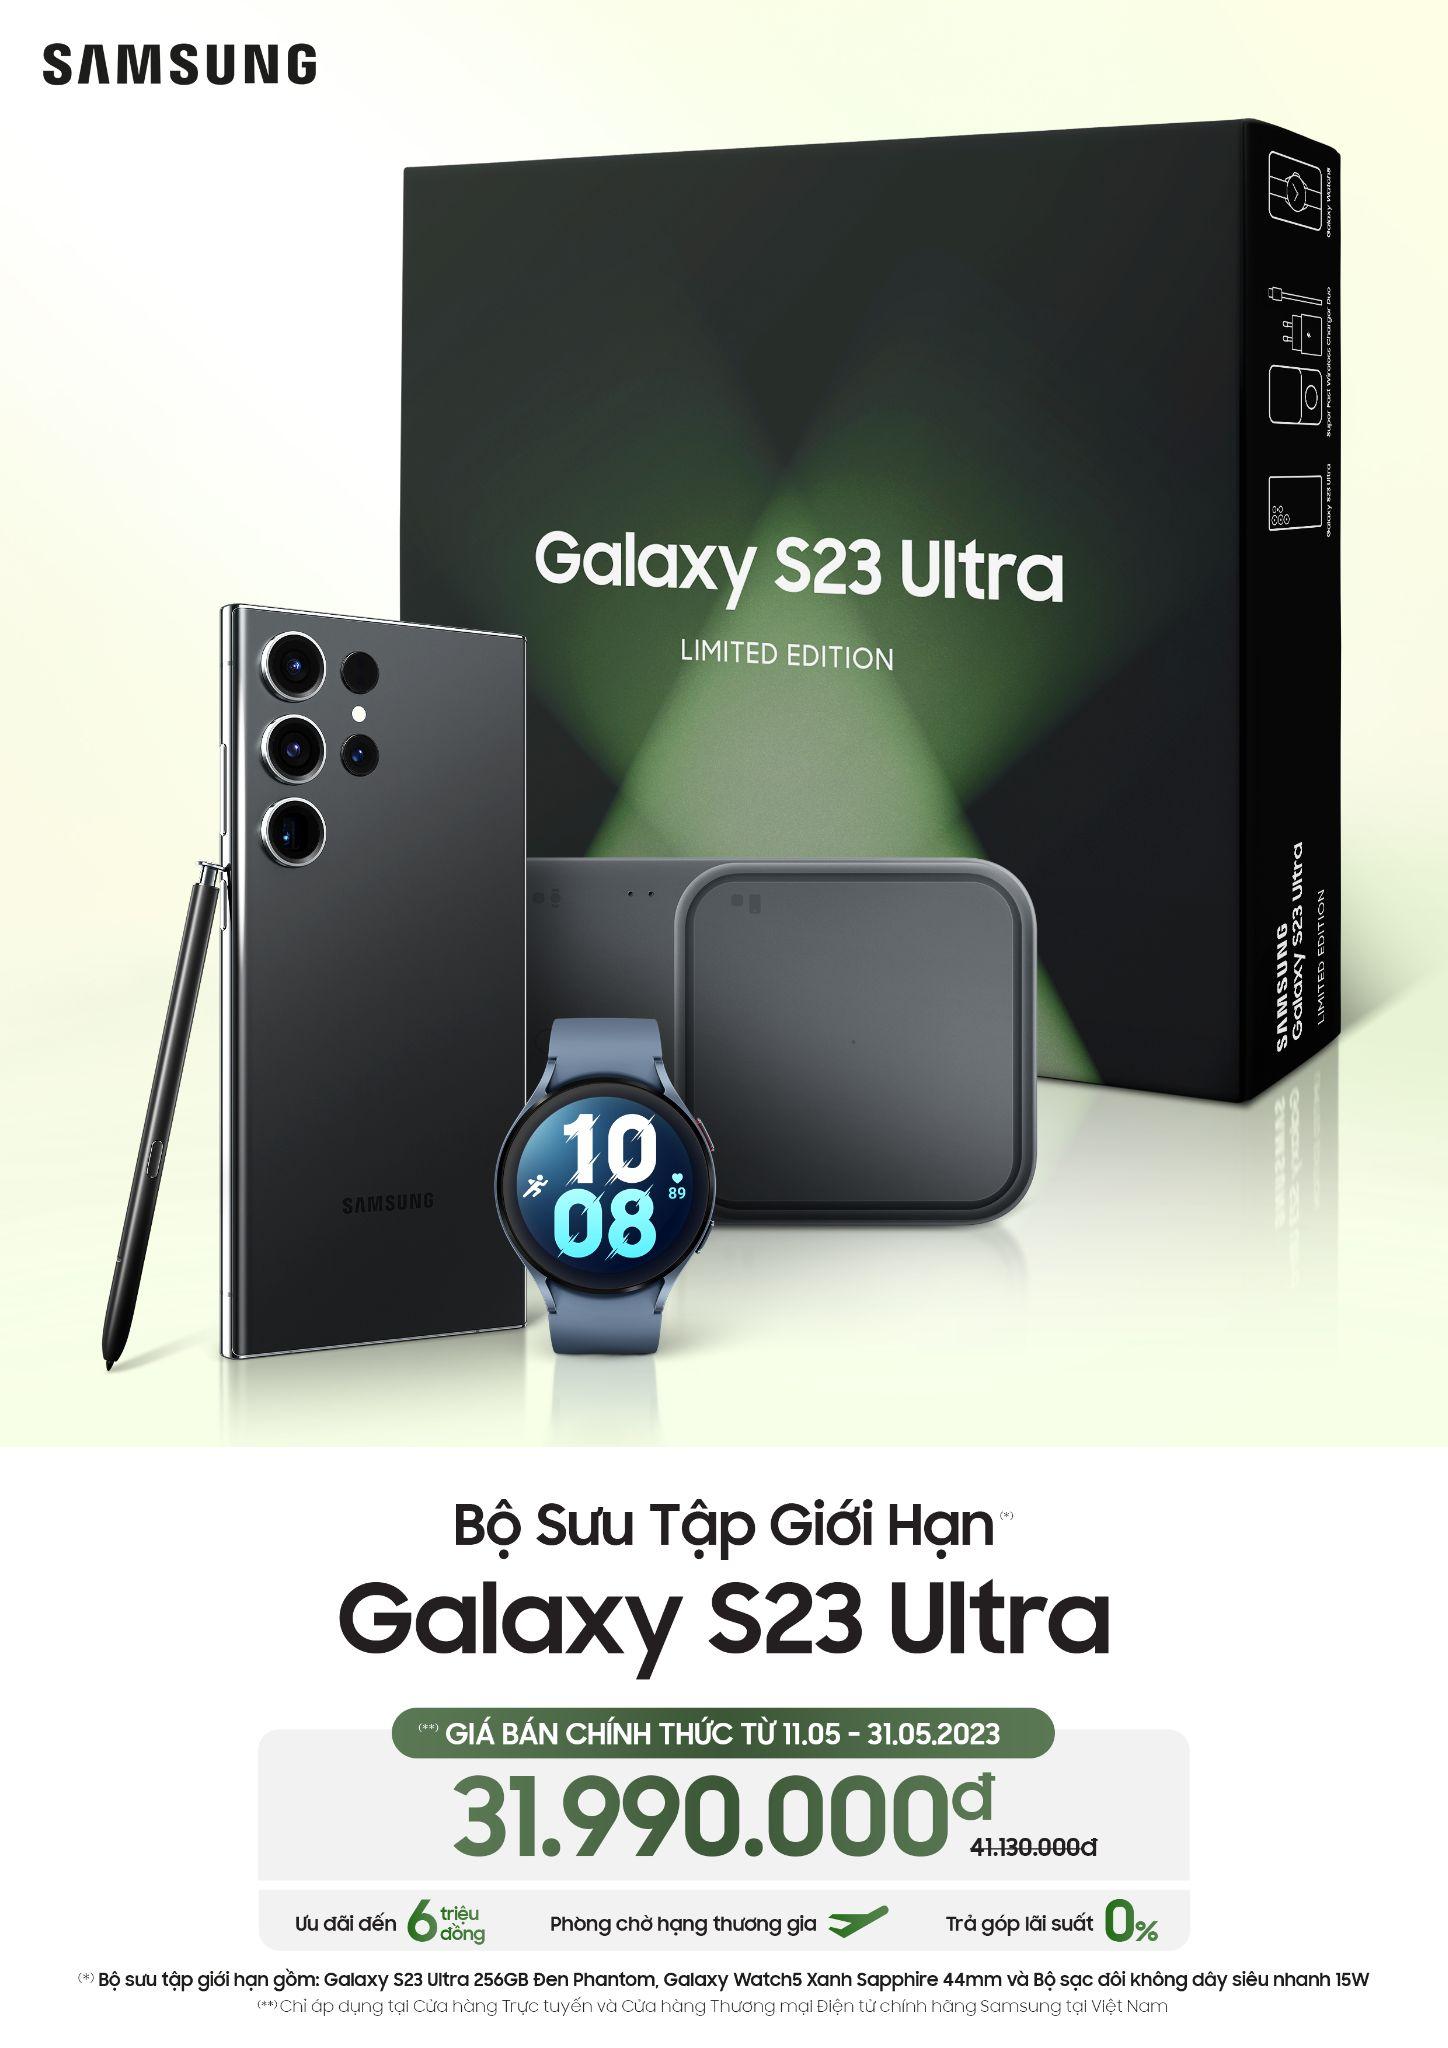 Rinh ngay Bộ sưu tập giới hạn Galaxy S23 Ultra với loạt sản phẩm công nghệ tiên tiến nhất của Samsung trong thời điểm hiện tại - Ảnh 1.